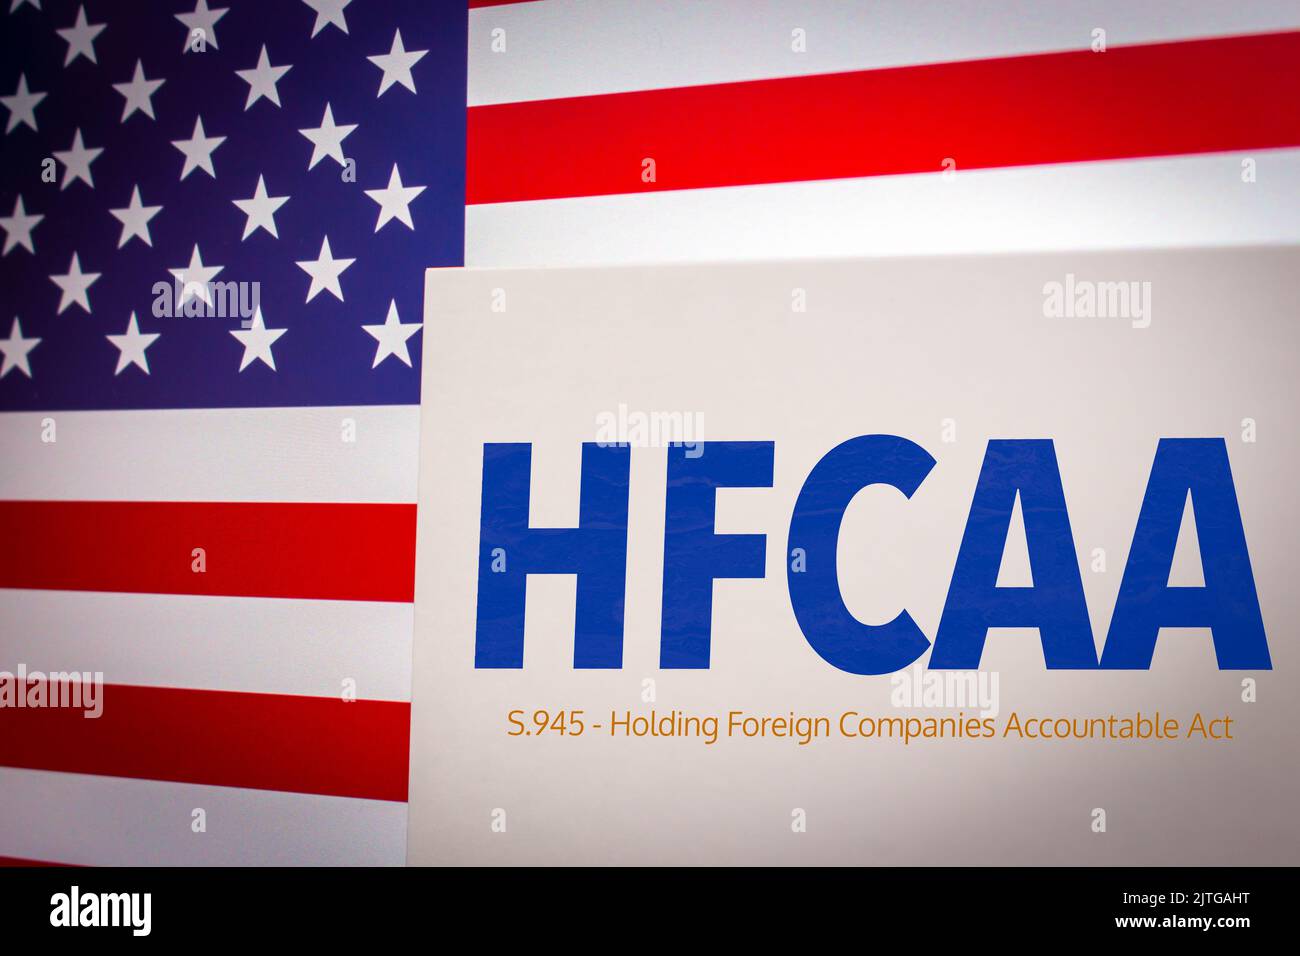 Konzeptionelles Schlüsselwort HFCAA (Holding Foreign Companies Accountable Act) auf der Karte mit US-Flagge. Chinesische Unternehmen in den USA Konzept Stockfoto